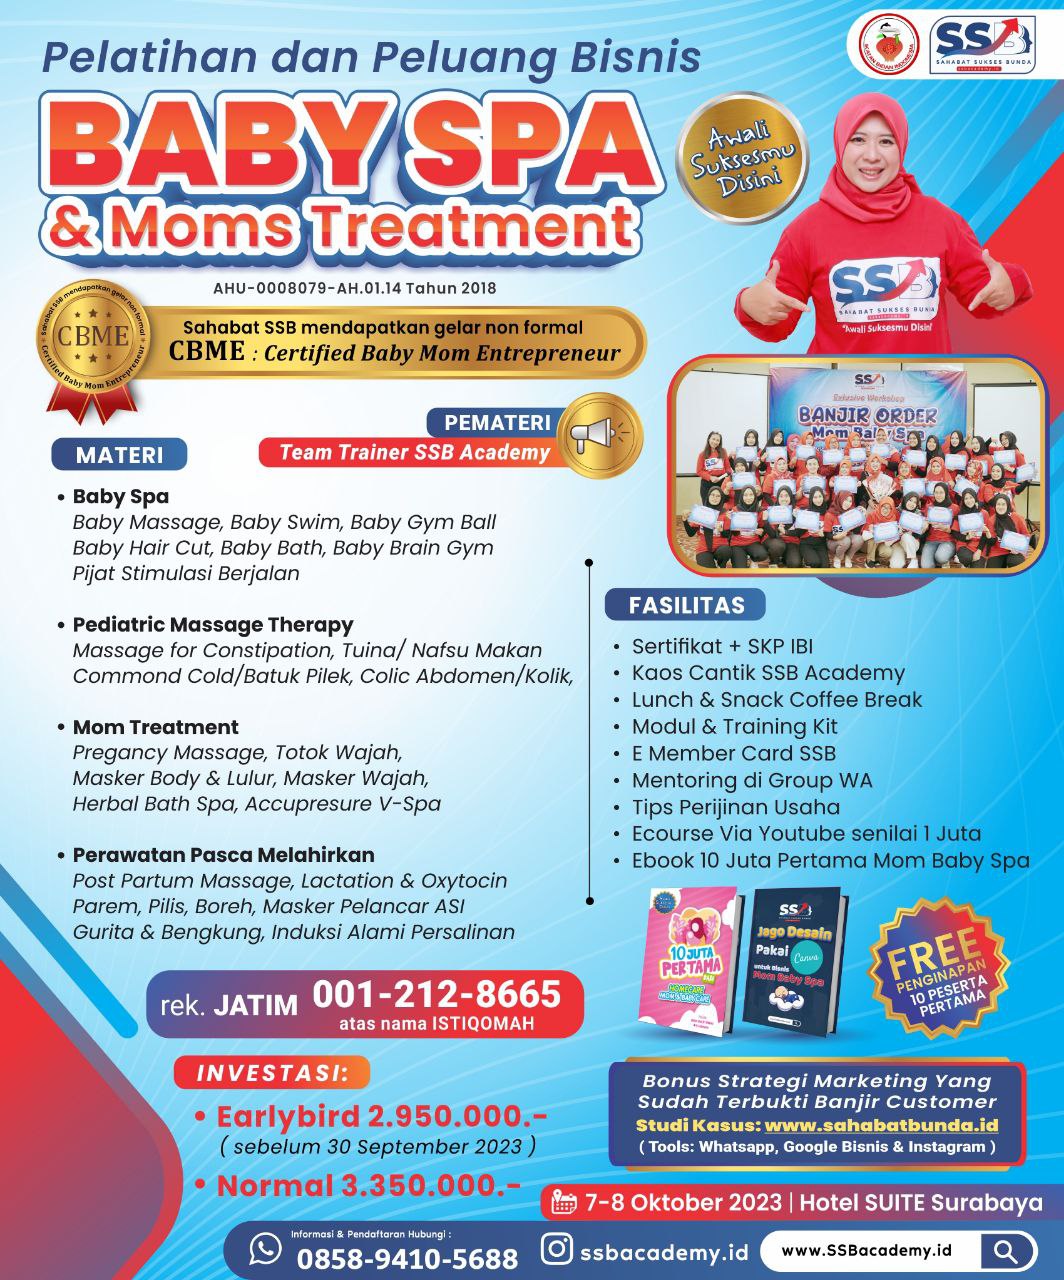 Pelatihan Baby Spa Bersertifikat di Aceh Utara Bersertifikat CBME ( Certified Baby Moms Entrepreneur )